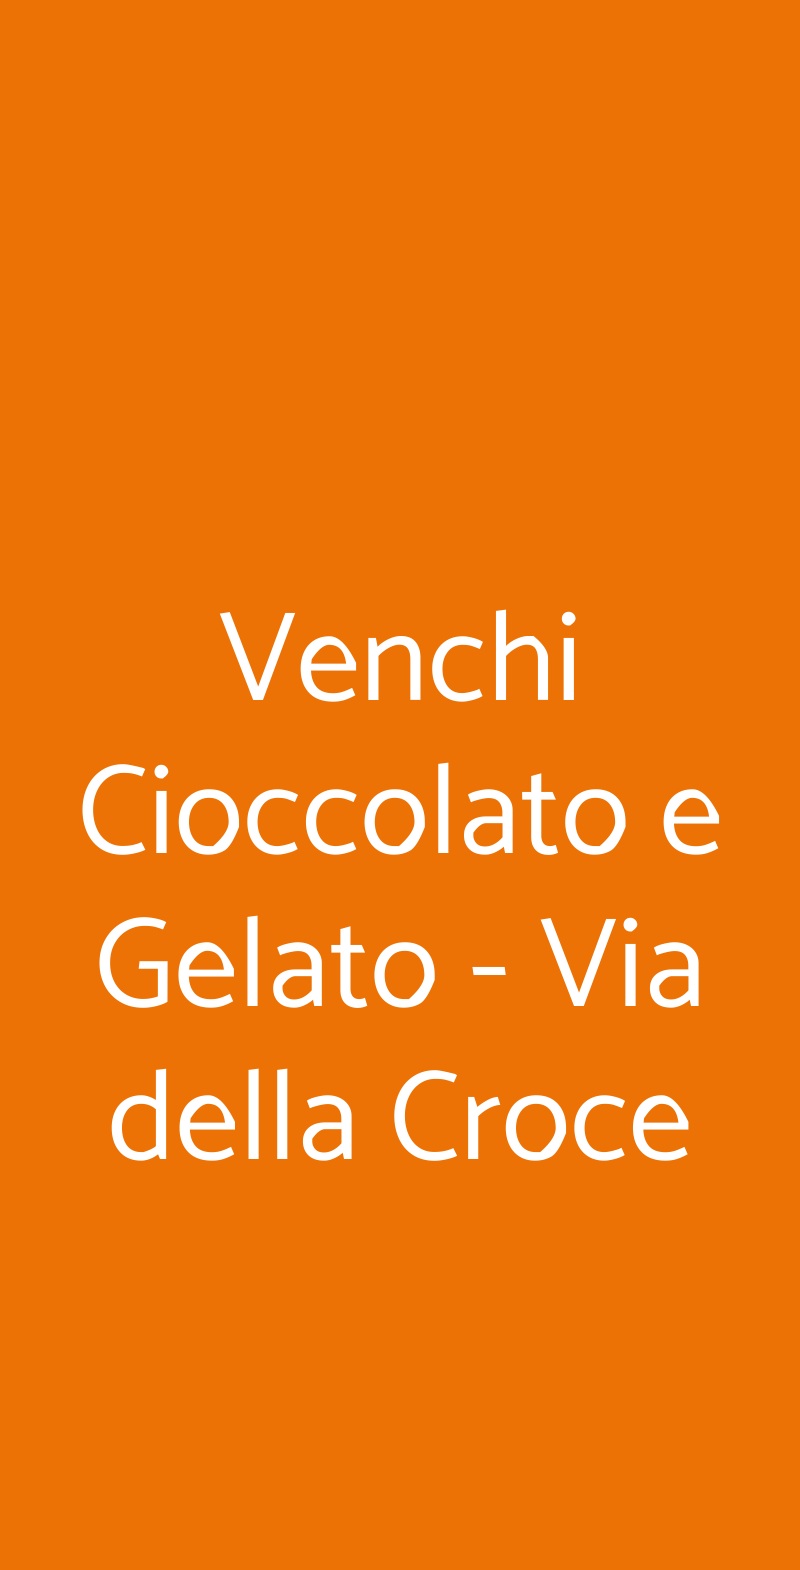 Venchi Cioccolato e Gelato - Via della Croce Roma menù 1 pagina